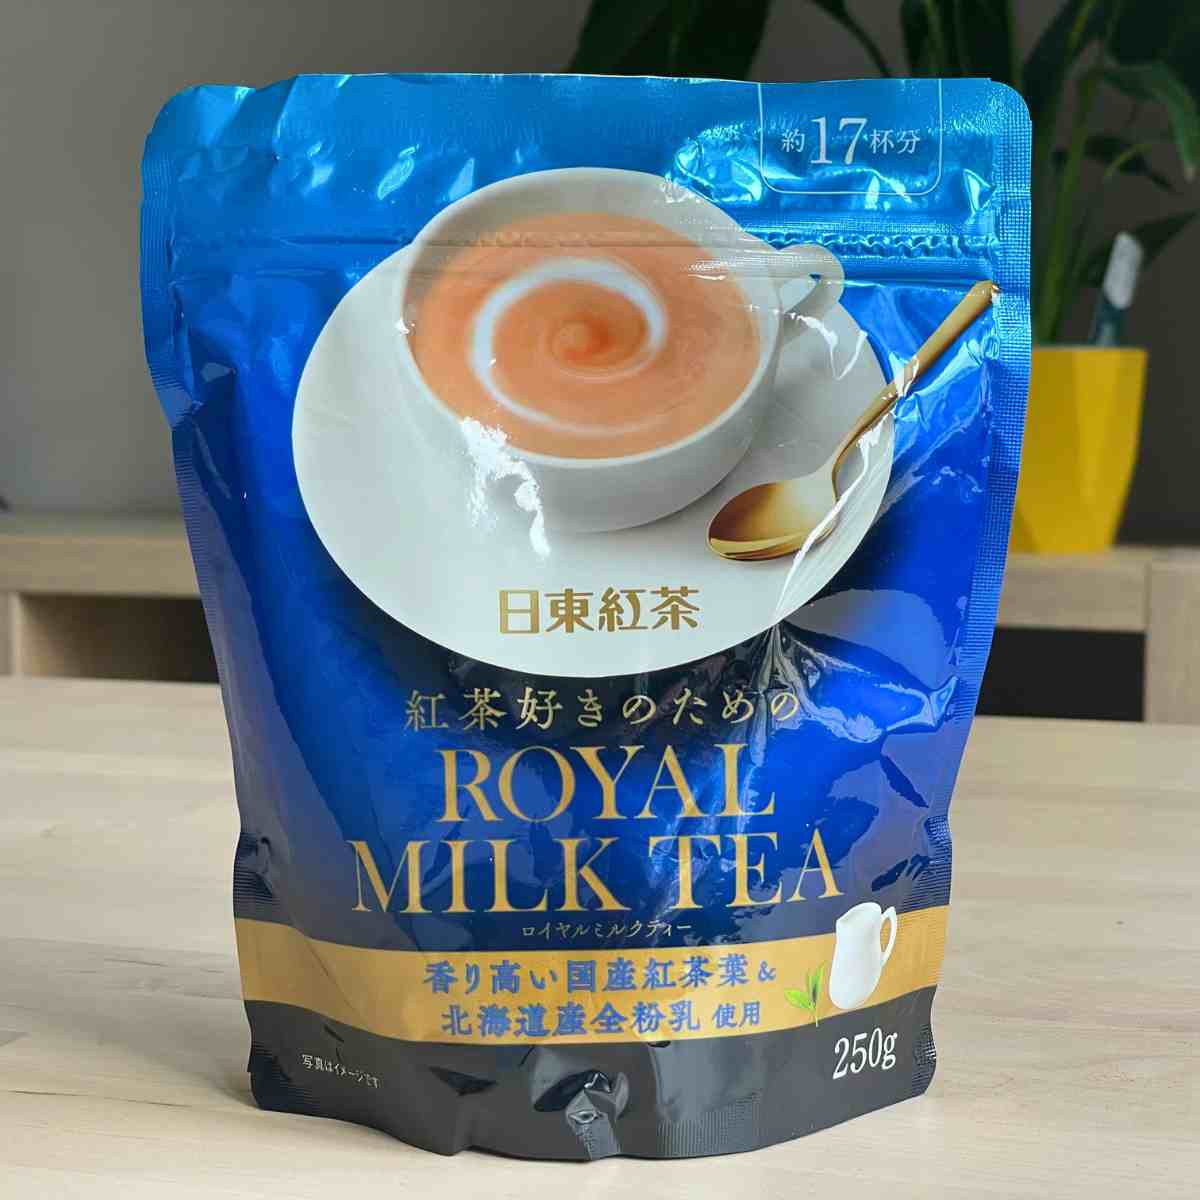 Nitto royal milk tea powder